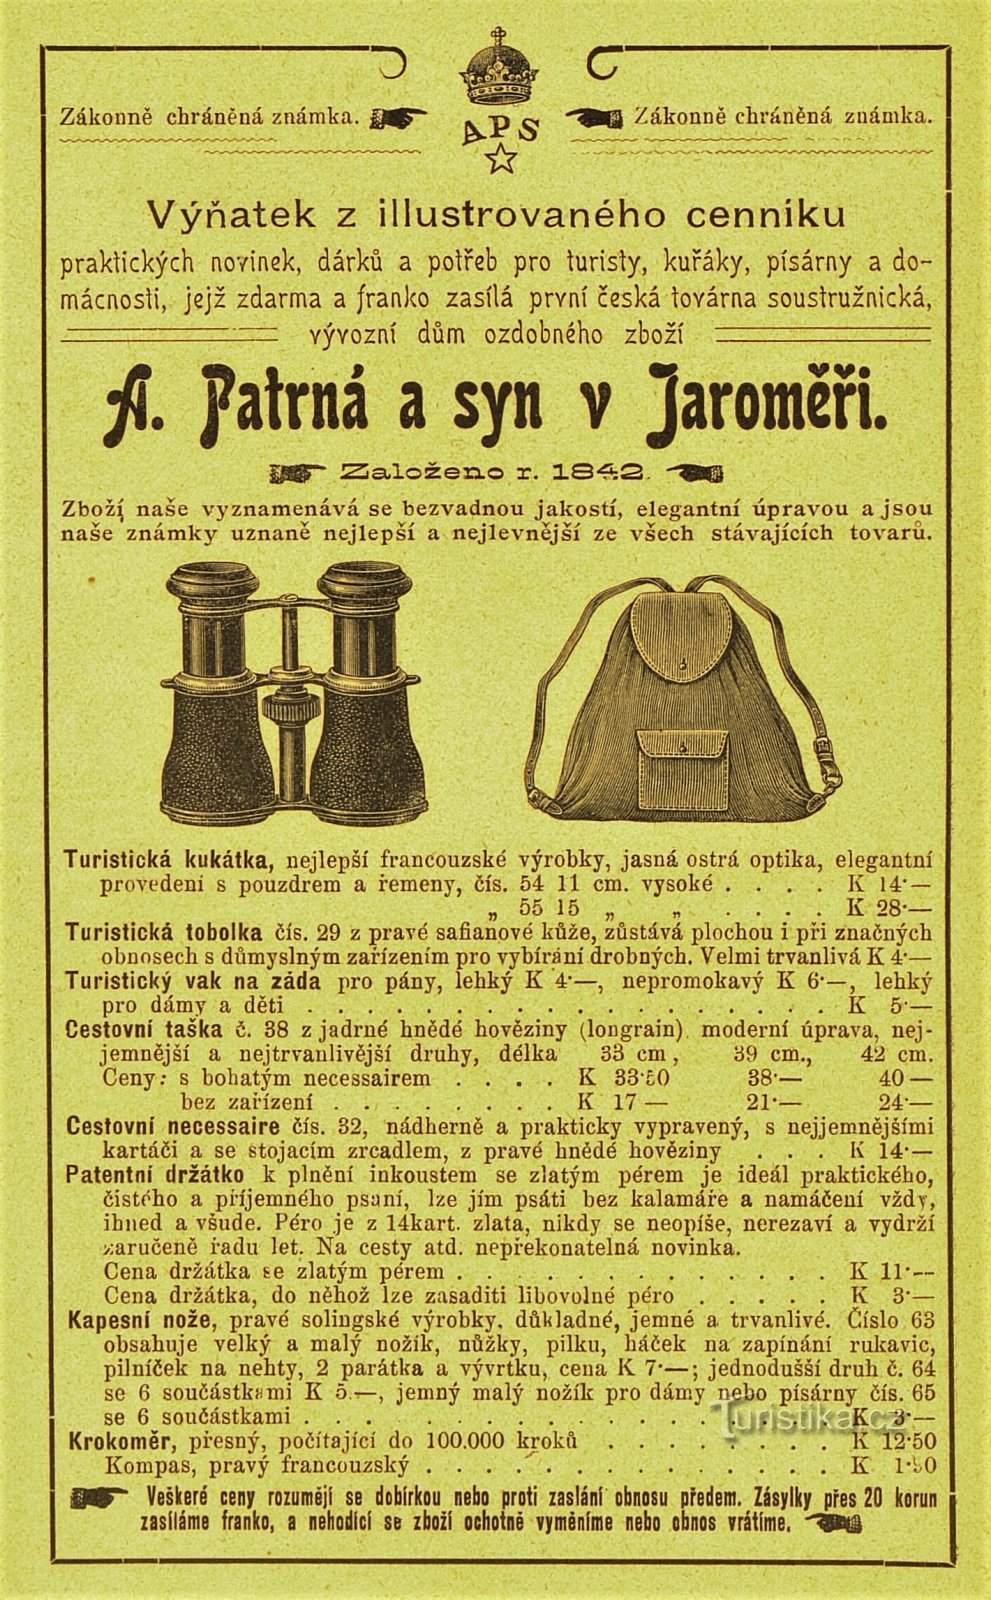 Sodobni oglas podjetja A. Patrná in sin v Jaroměřu (1902)